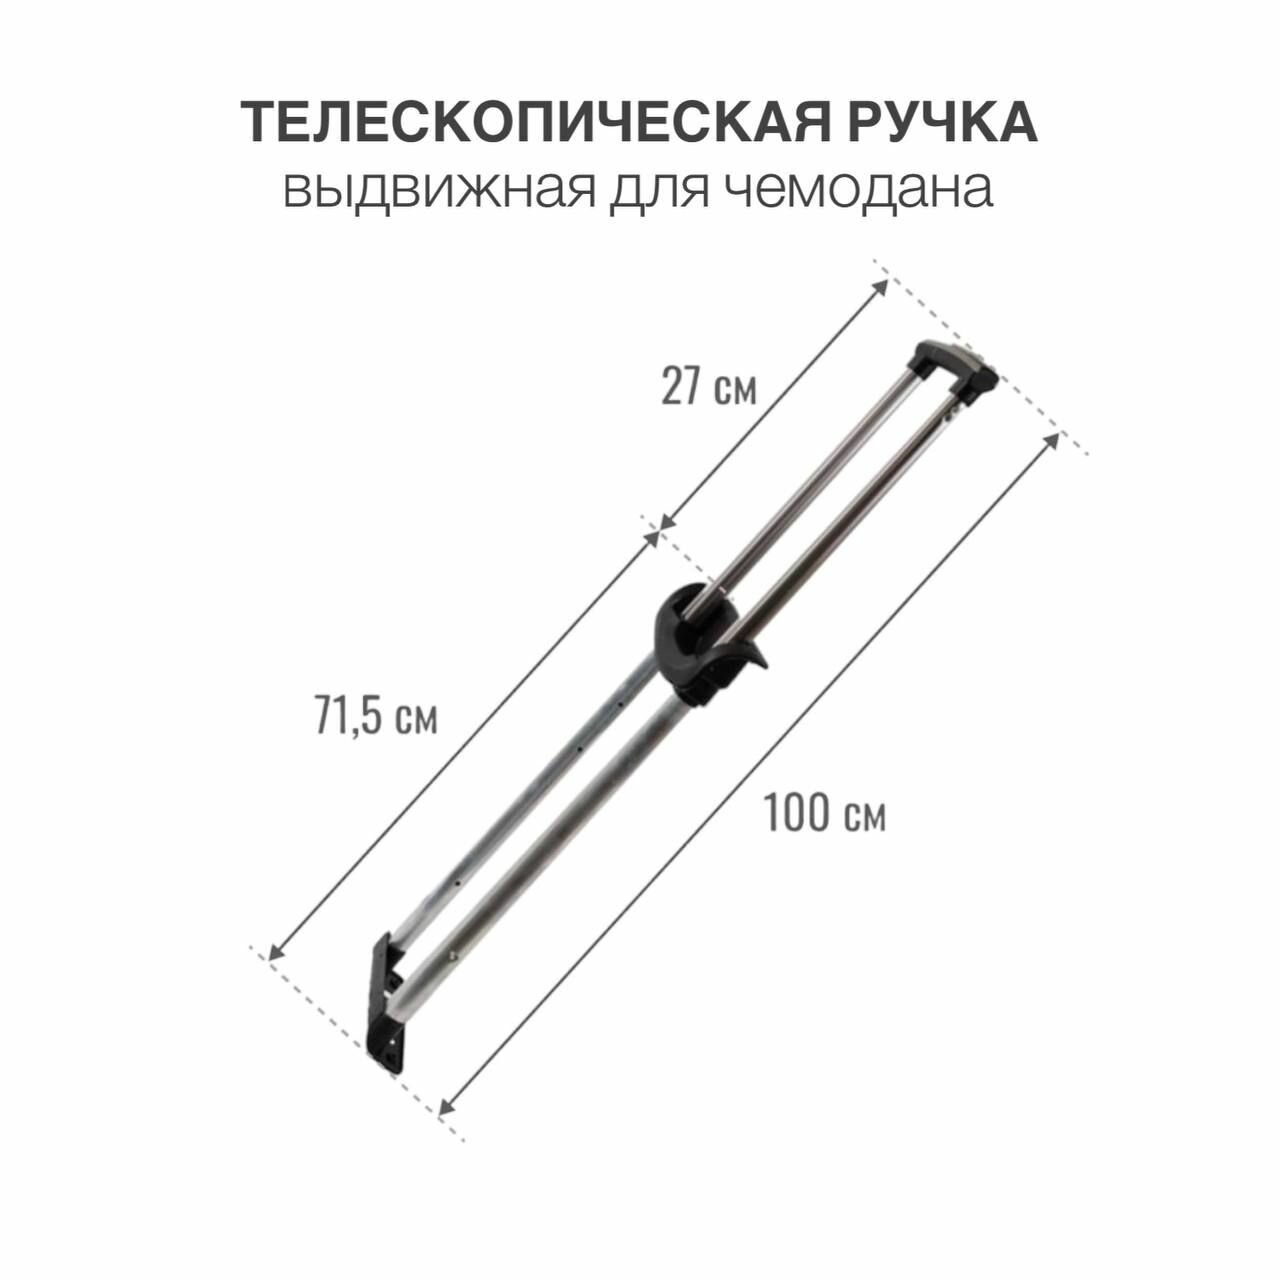 Ручка выдвижная для чемодана, телескопическая ручка, металлическая, (тип 3), 1 шт